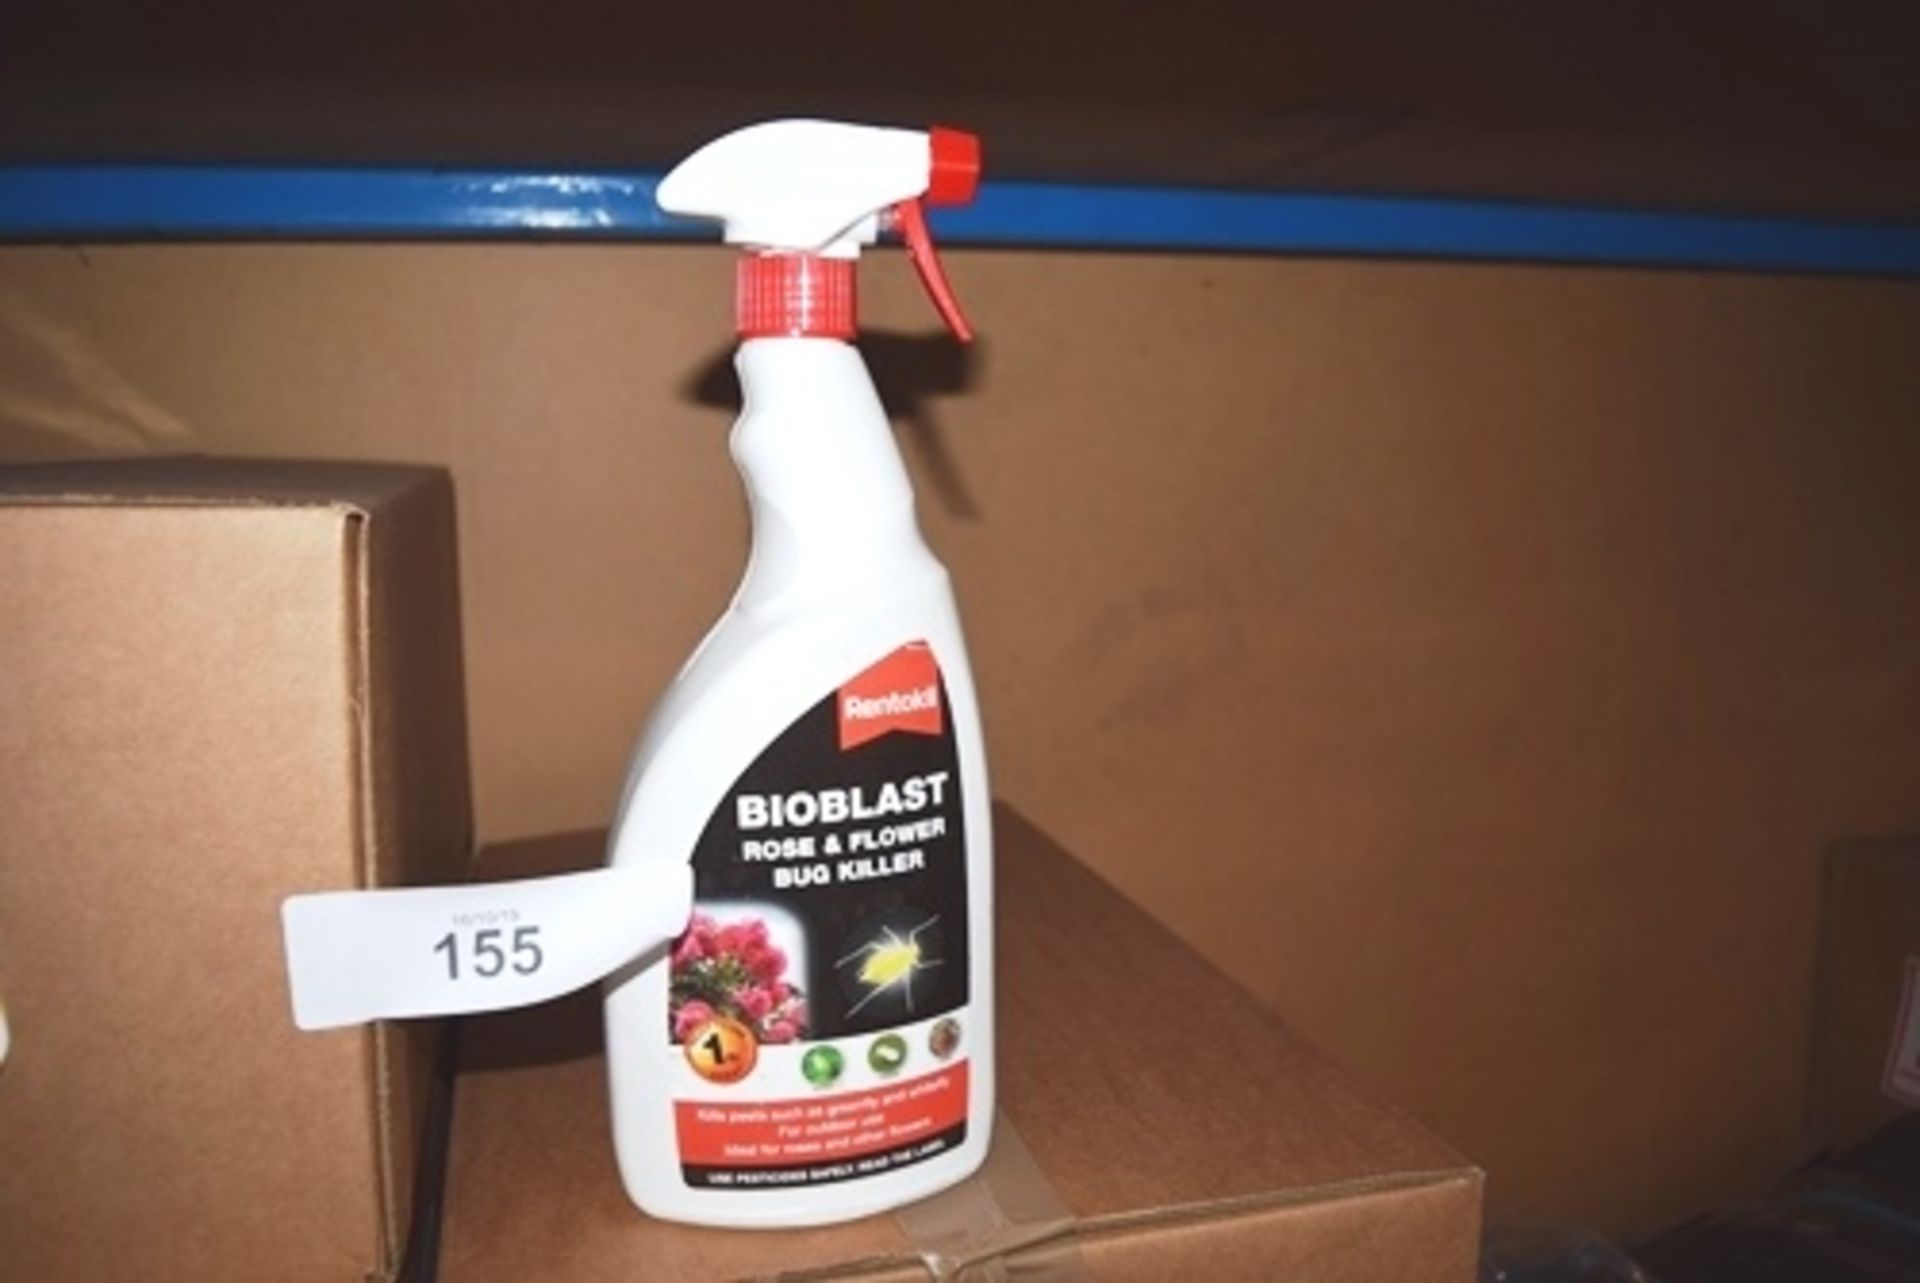 Approximately 216 x 1ltr bottles of Rentokil bro blast spray rose & flower bug killer, expiry 08/